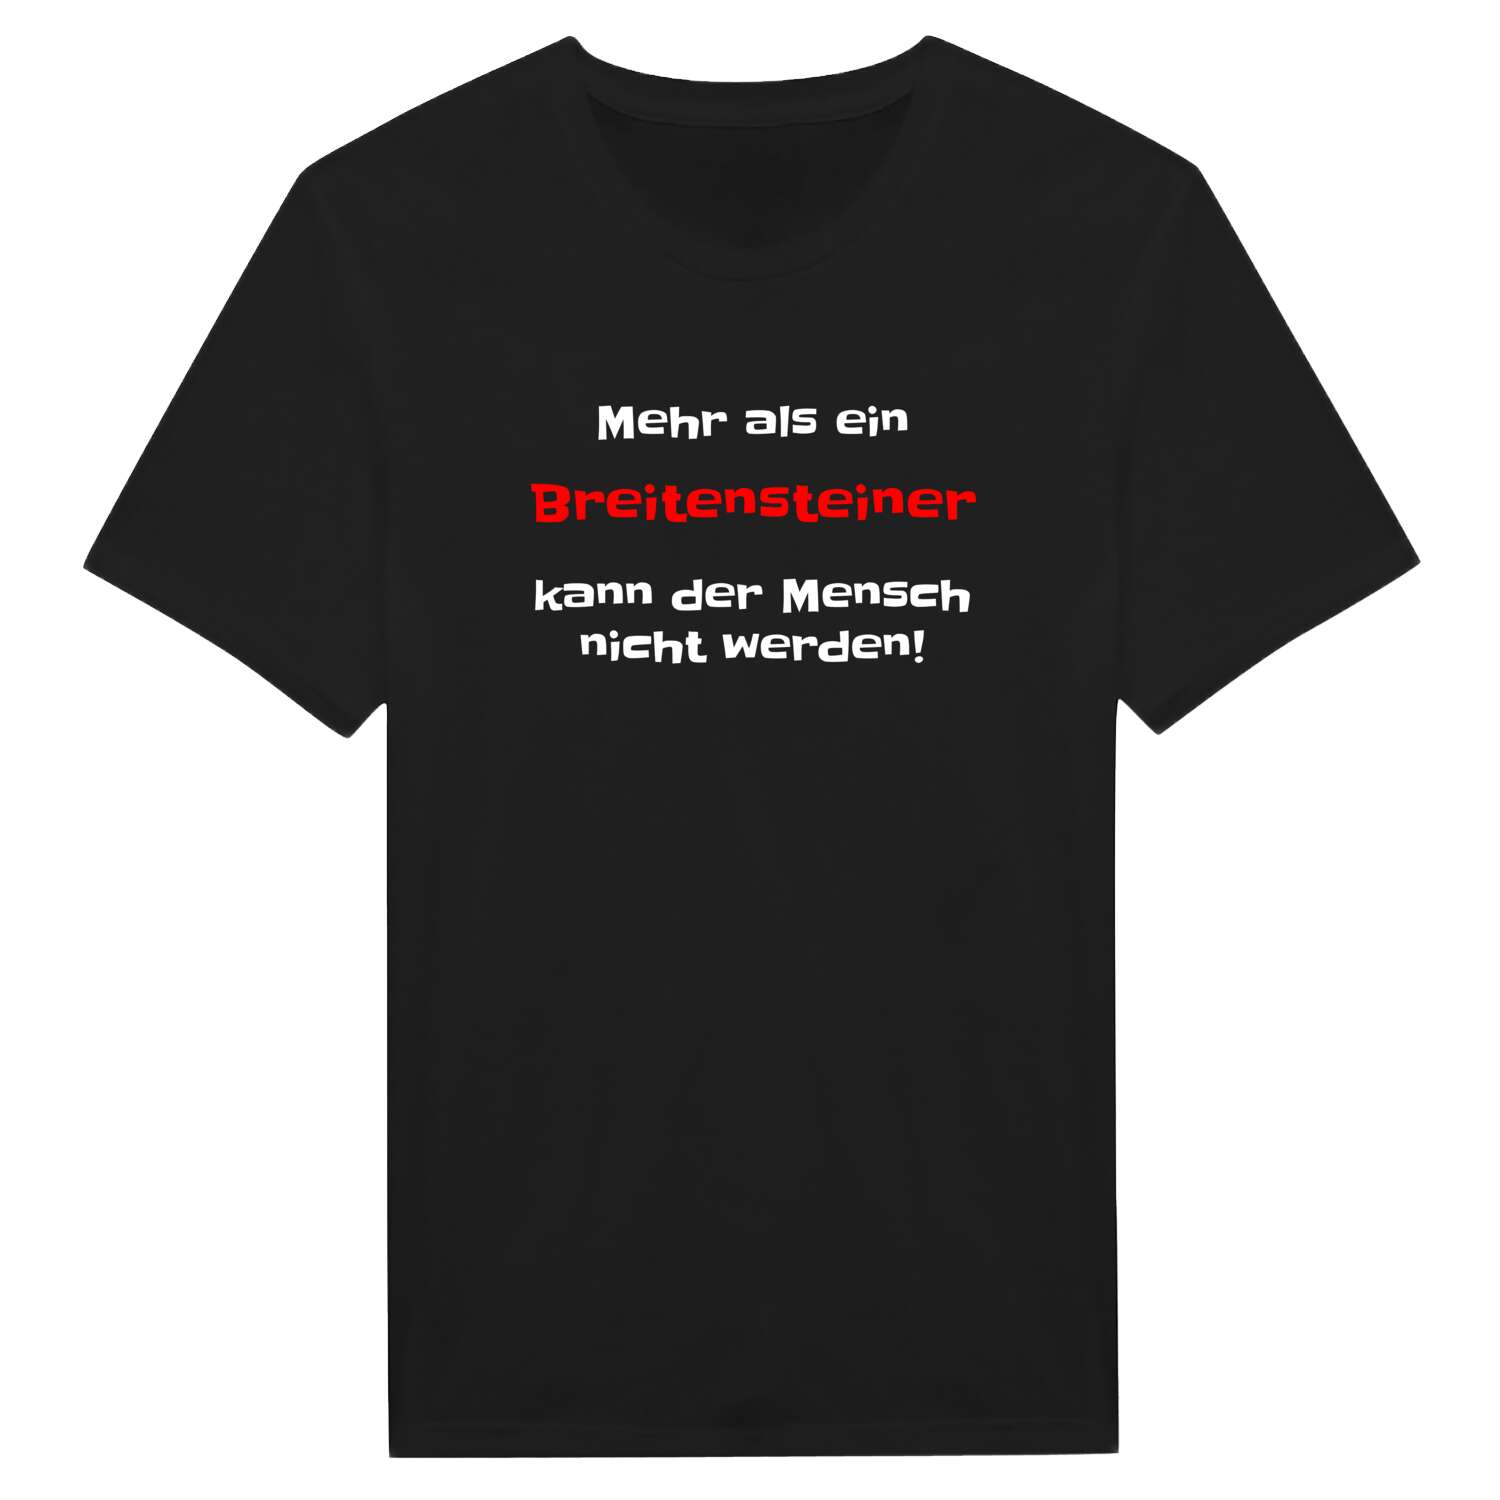 Breitenstein T-Shirt »Mehr als ein«